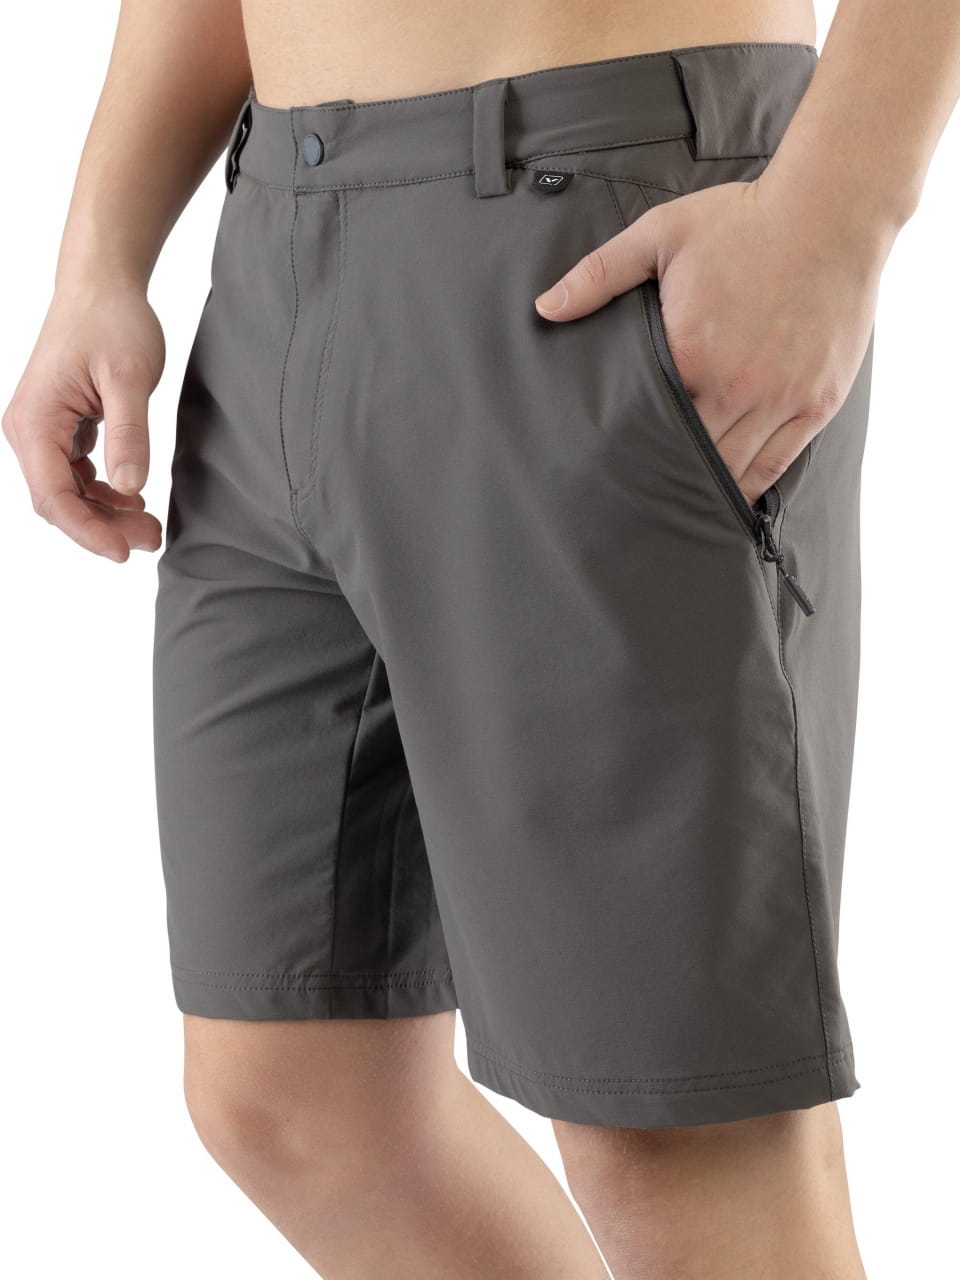 Shorts für Männer Viking Expander Shorts